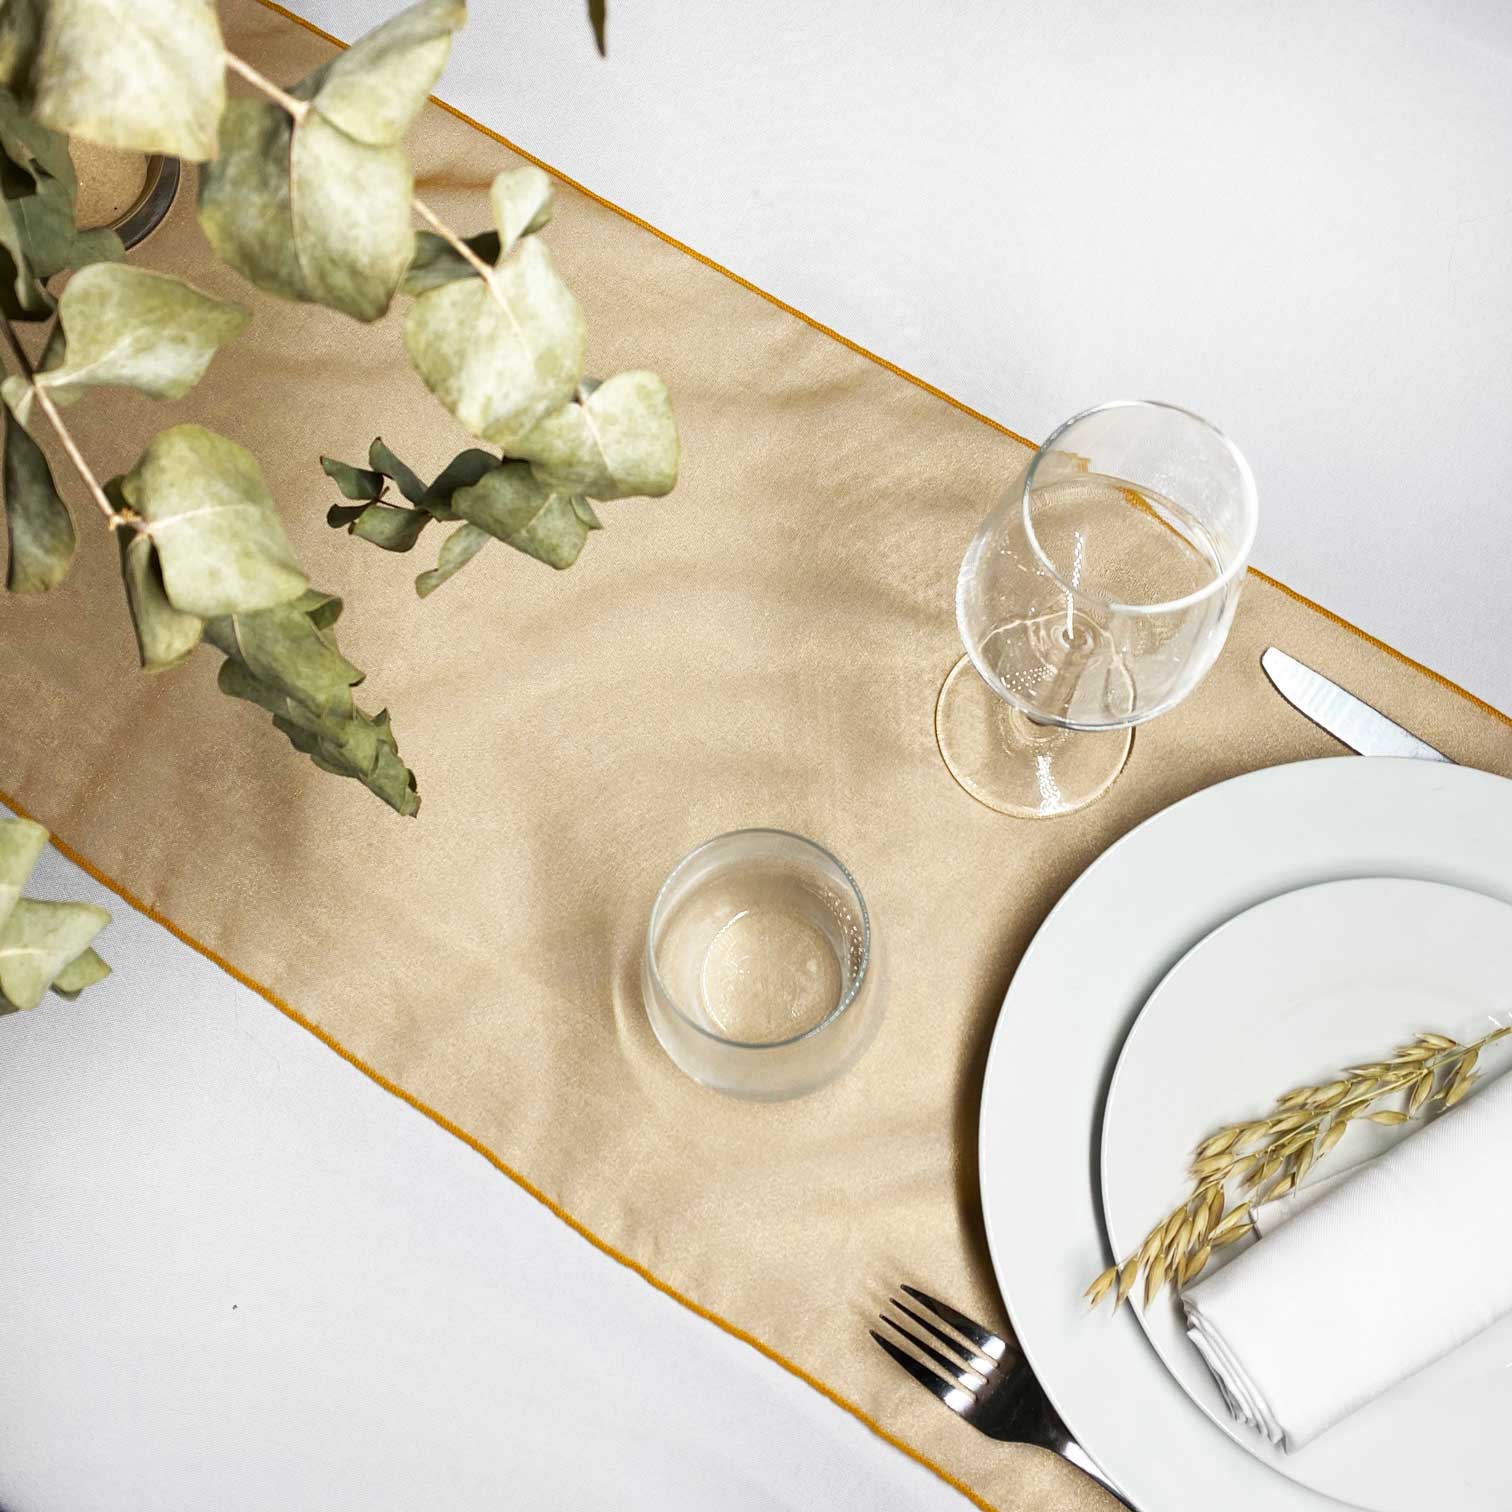 Chemin de table en organza blanc avec pois doré 36 cm x 9 m - Vegaooparty